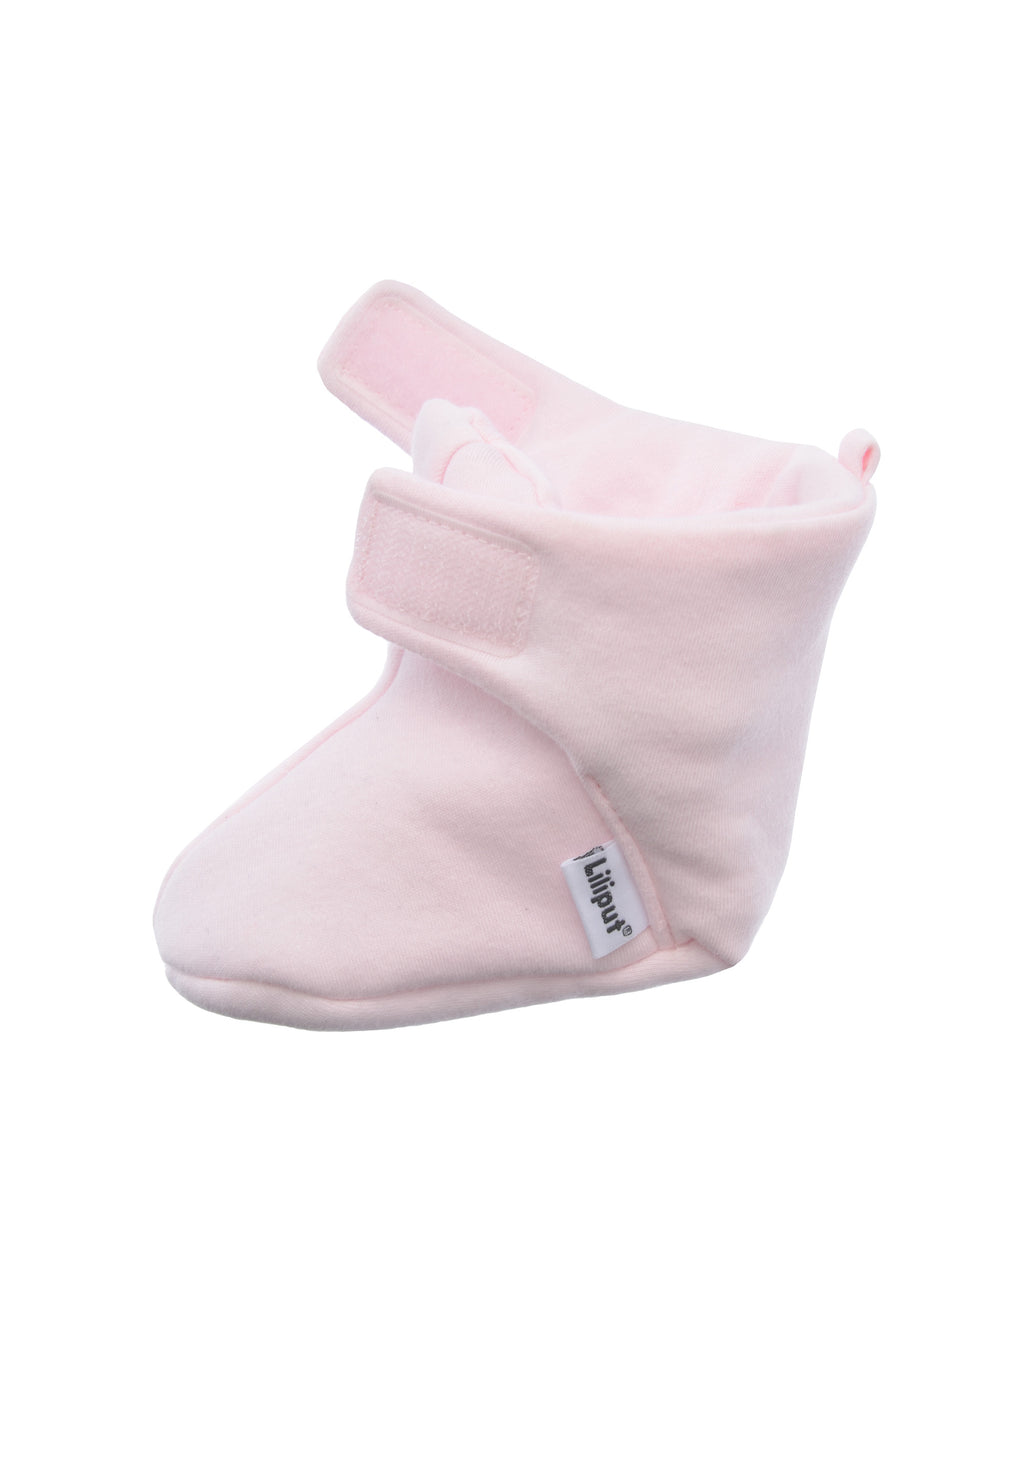 Babyschuhe mit leichter Wattierung in rosa und praktischem Klettverschluss.